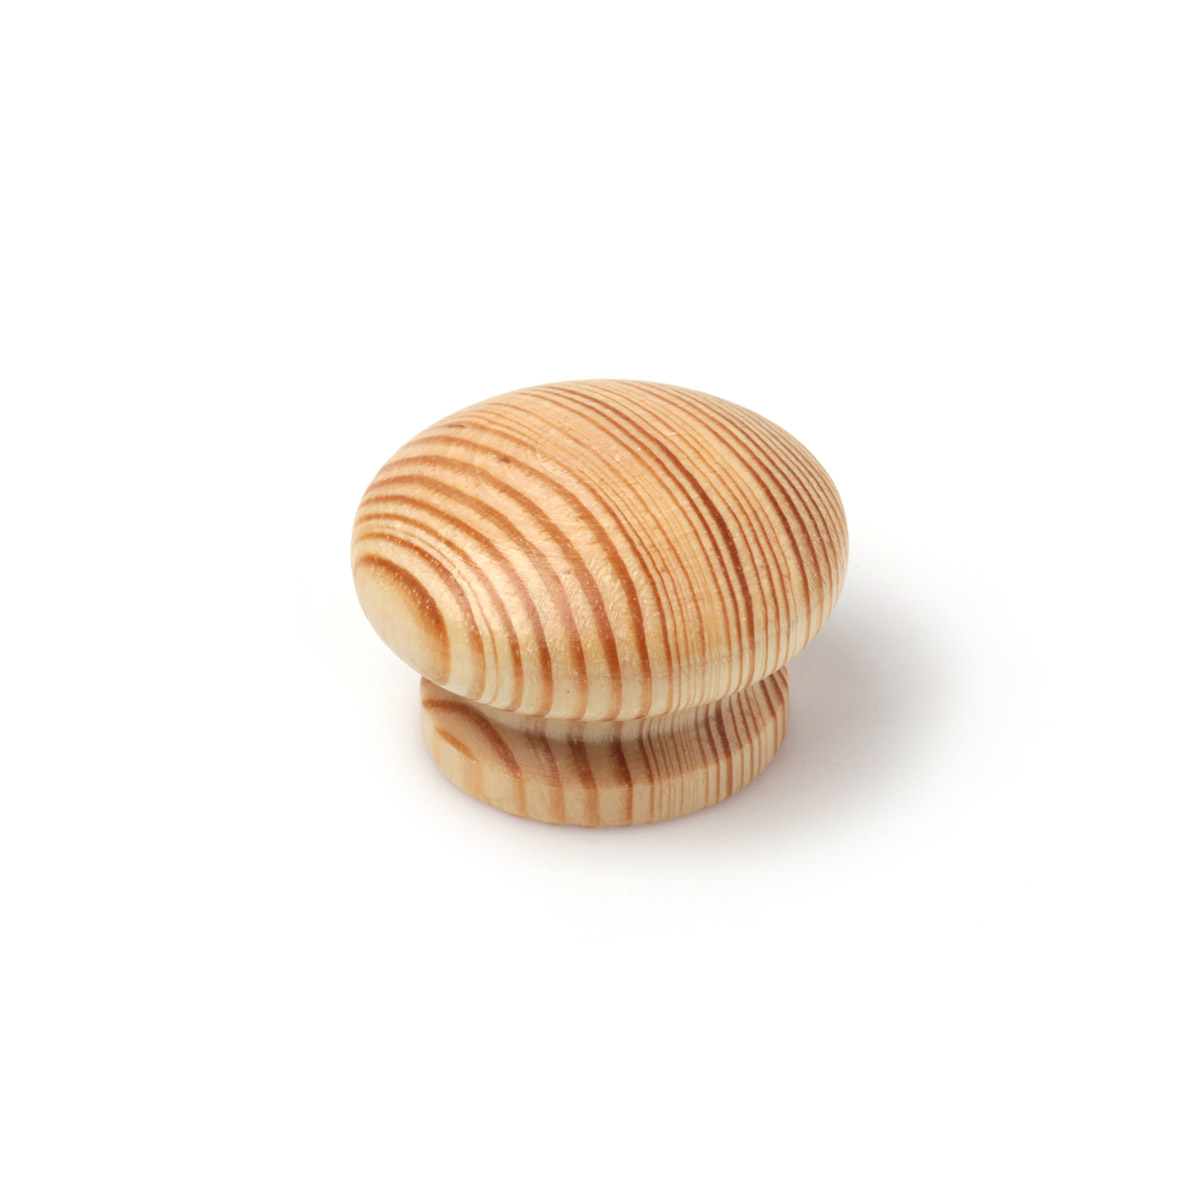 Bouton en bois avec finition en pin transparent., Dimensions: 44x44x30mm, Ø: 44mm